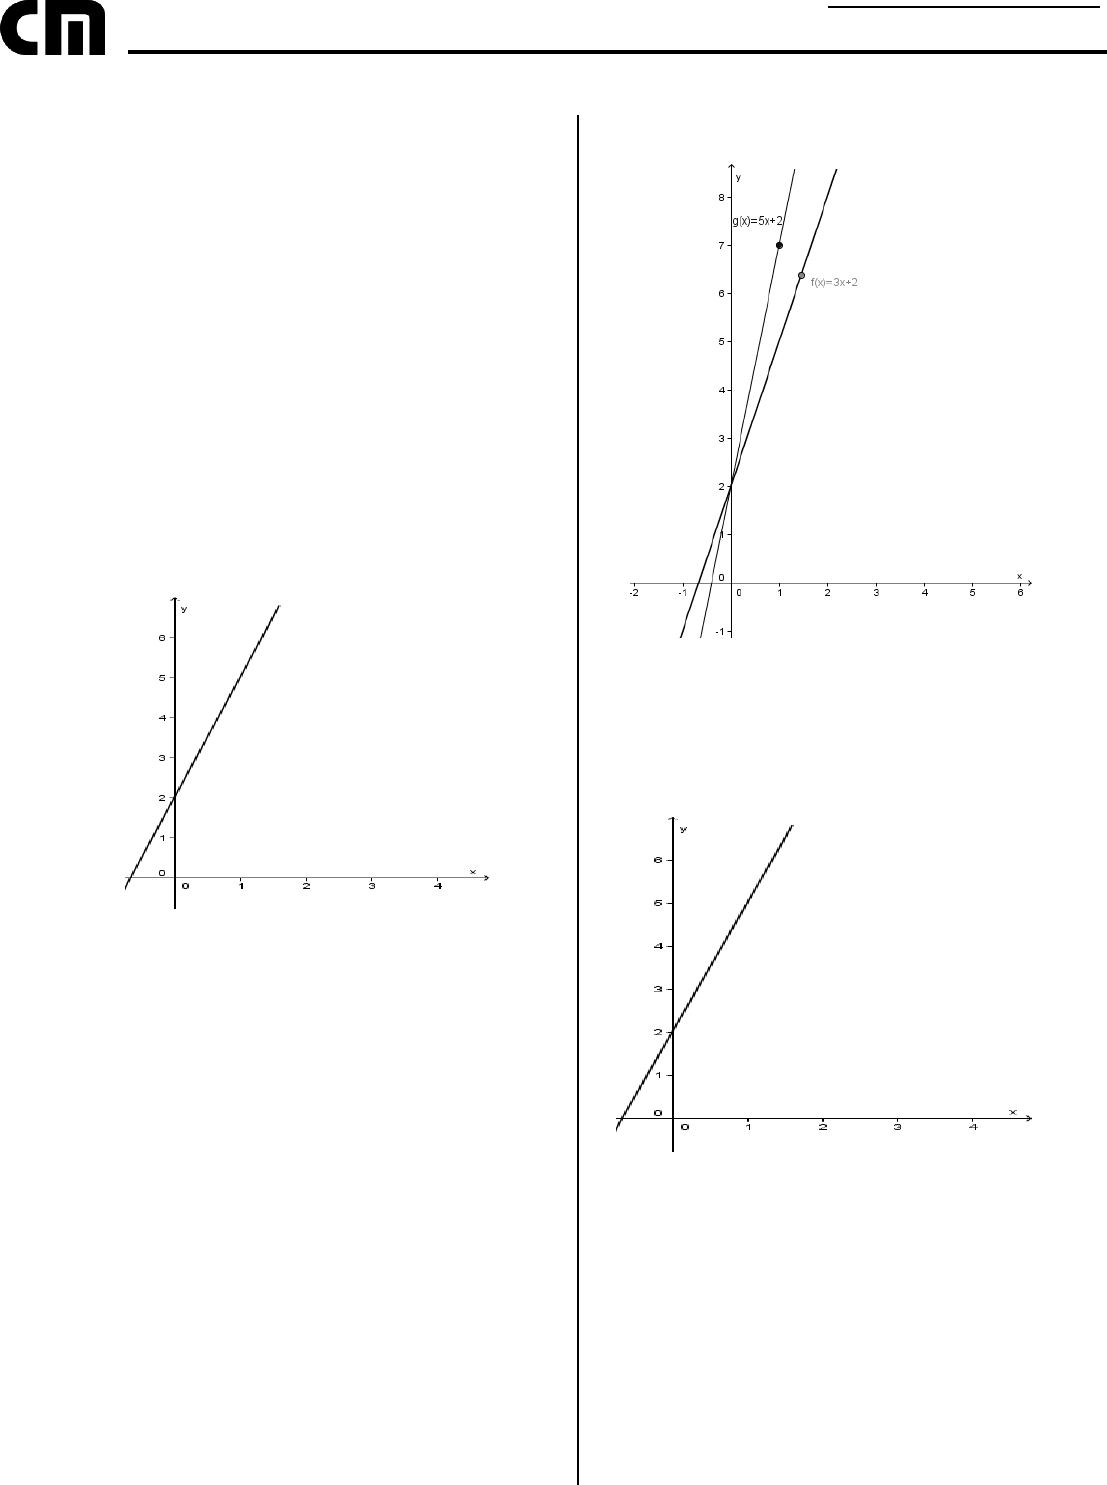 D44 - Utilizar o Teorema de Euler para Determinar o Número de